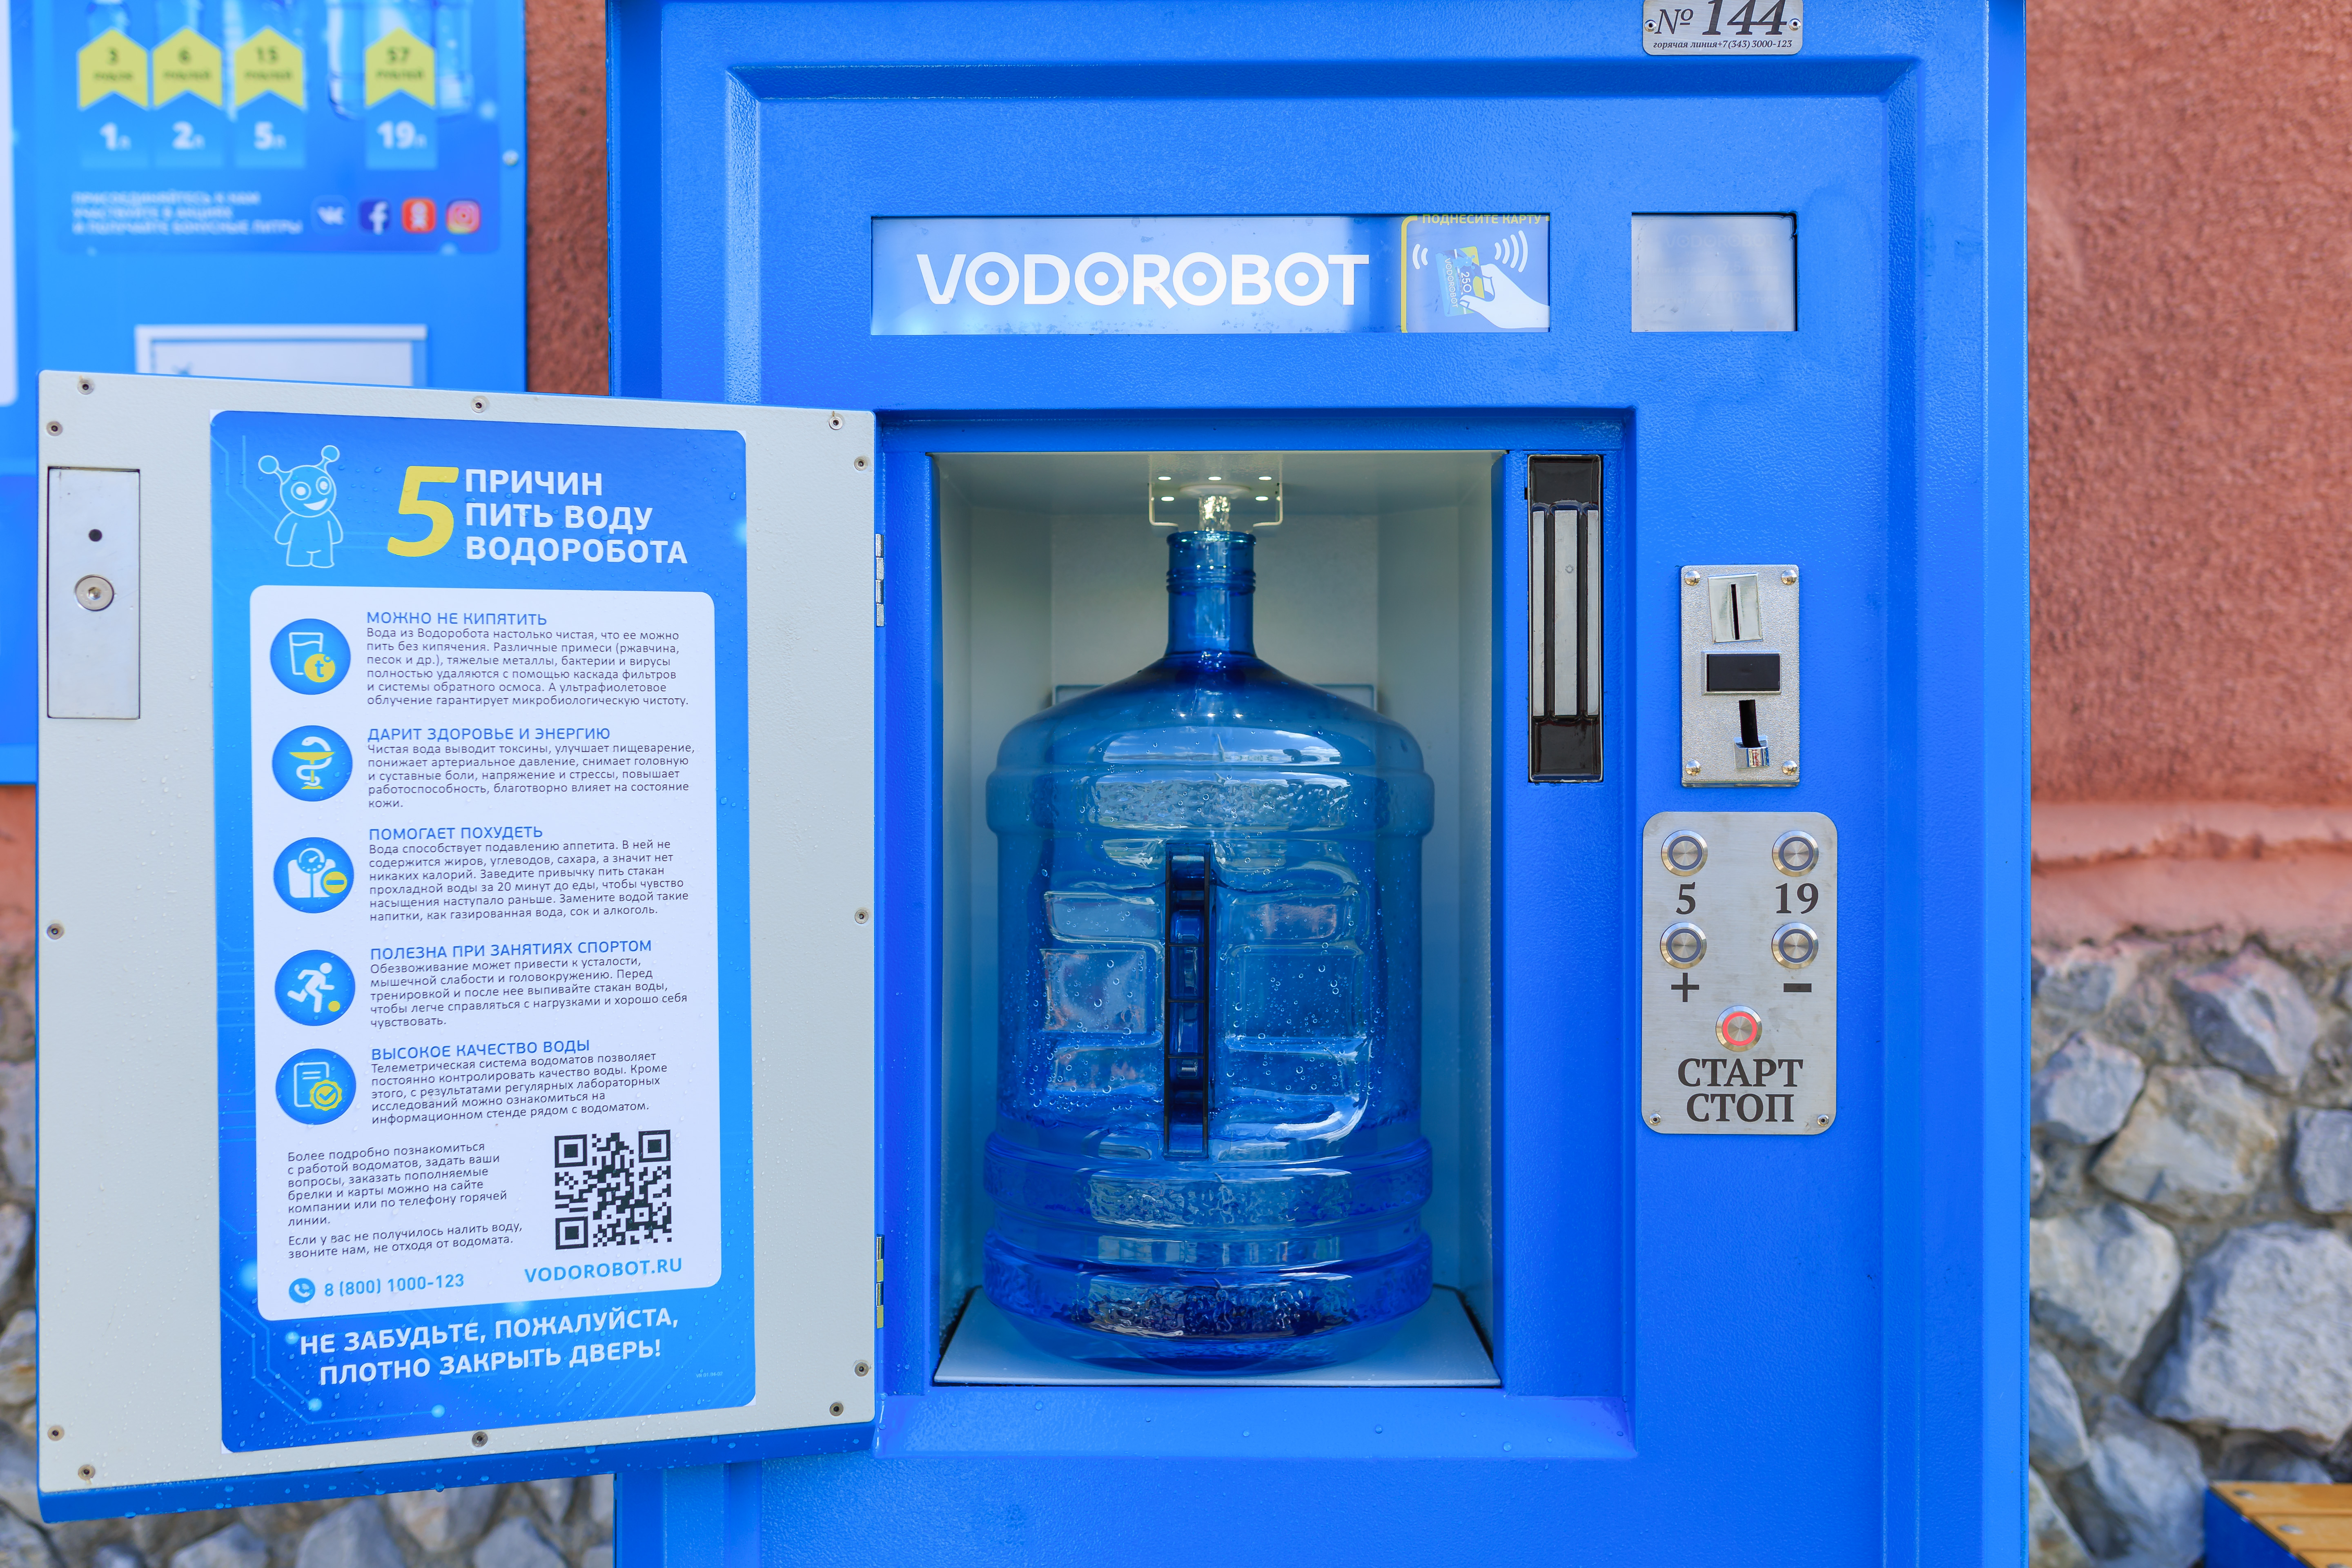 Питьевая вода федерация. Автомат питьевой воды. Автомат с бутилированной водой. Водоробот автомат. Аппарат для питьевой воды на улице.